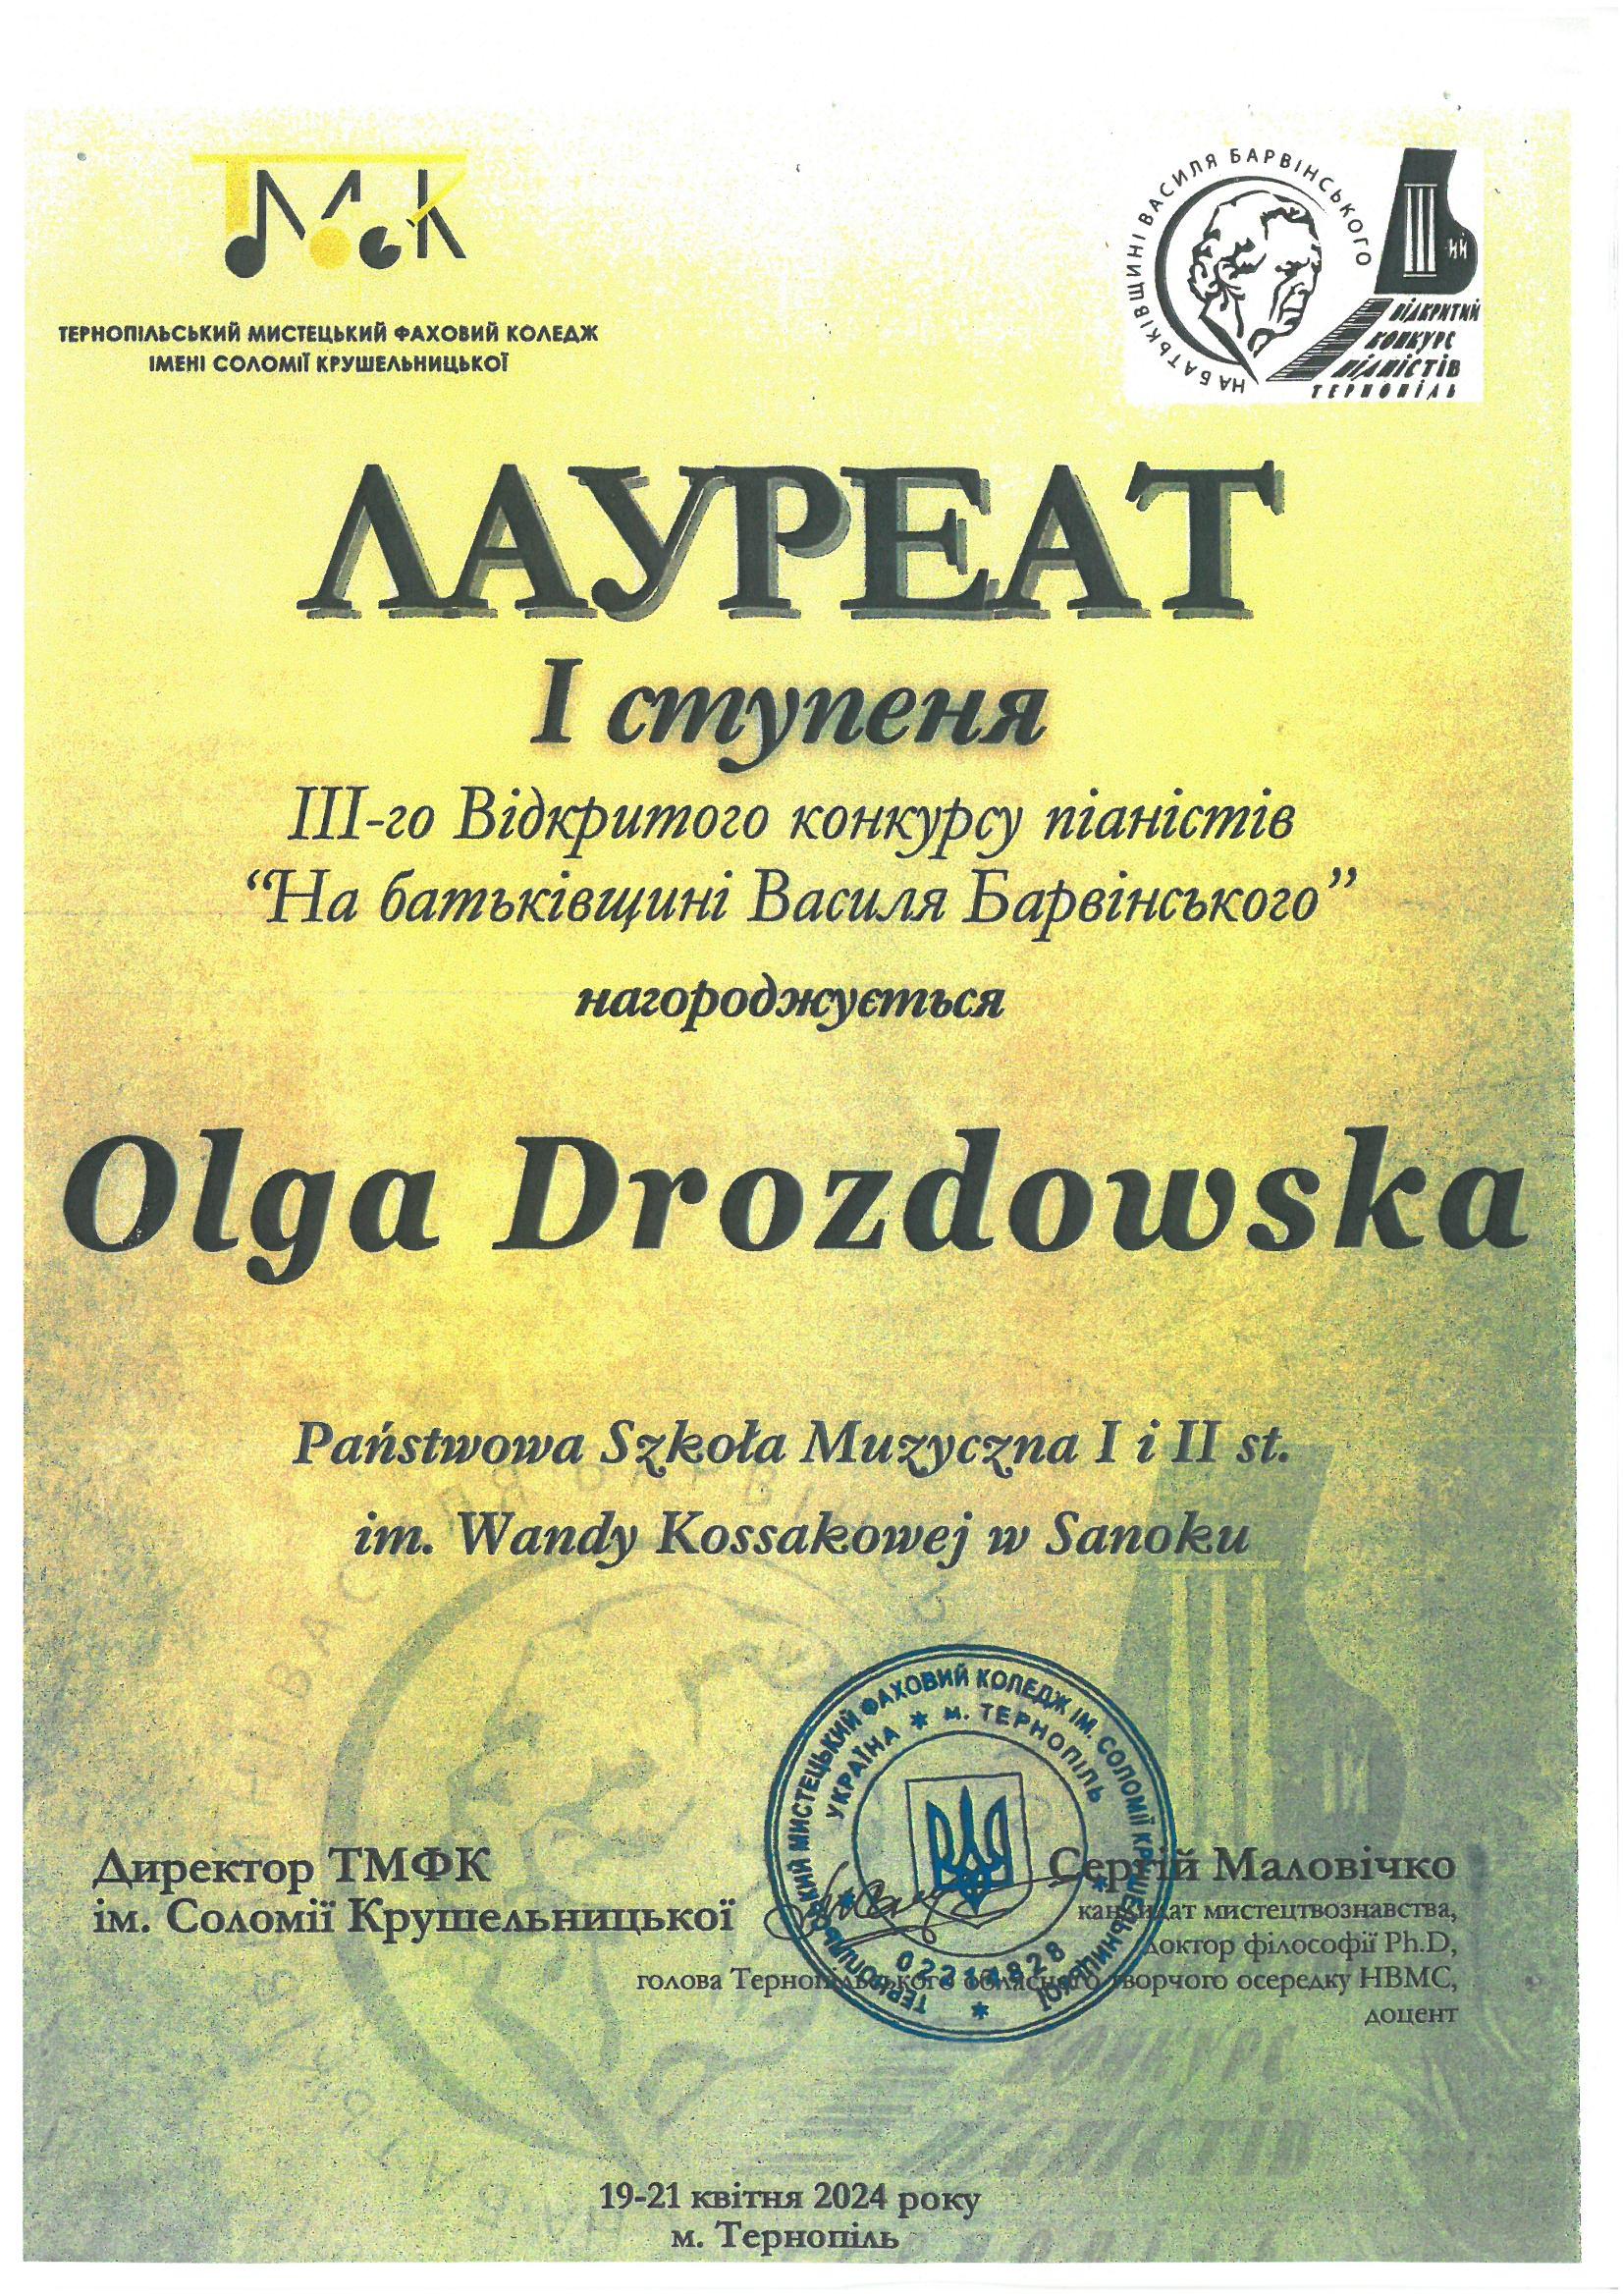 Dyplom - Olga Drozdowska - Tarnopol 19-21.04.2024r. Żółte tło, czarne litery, w górnym rogu logo konkursu 